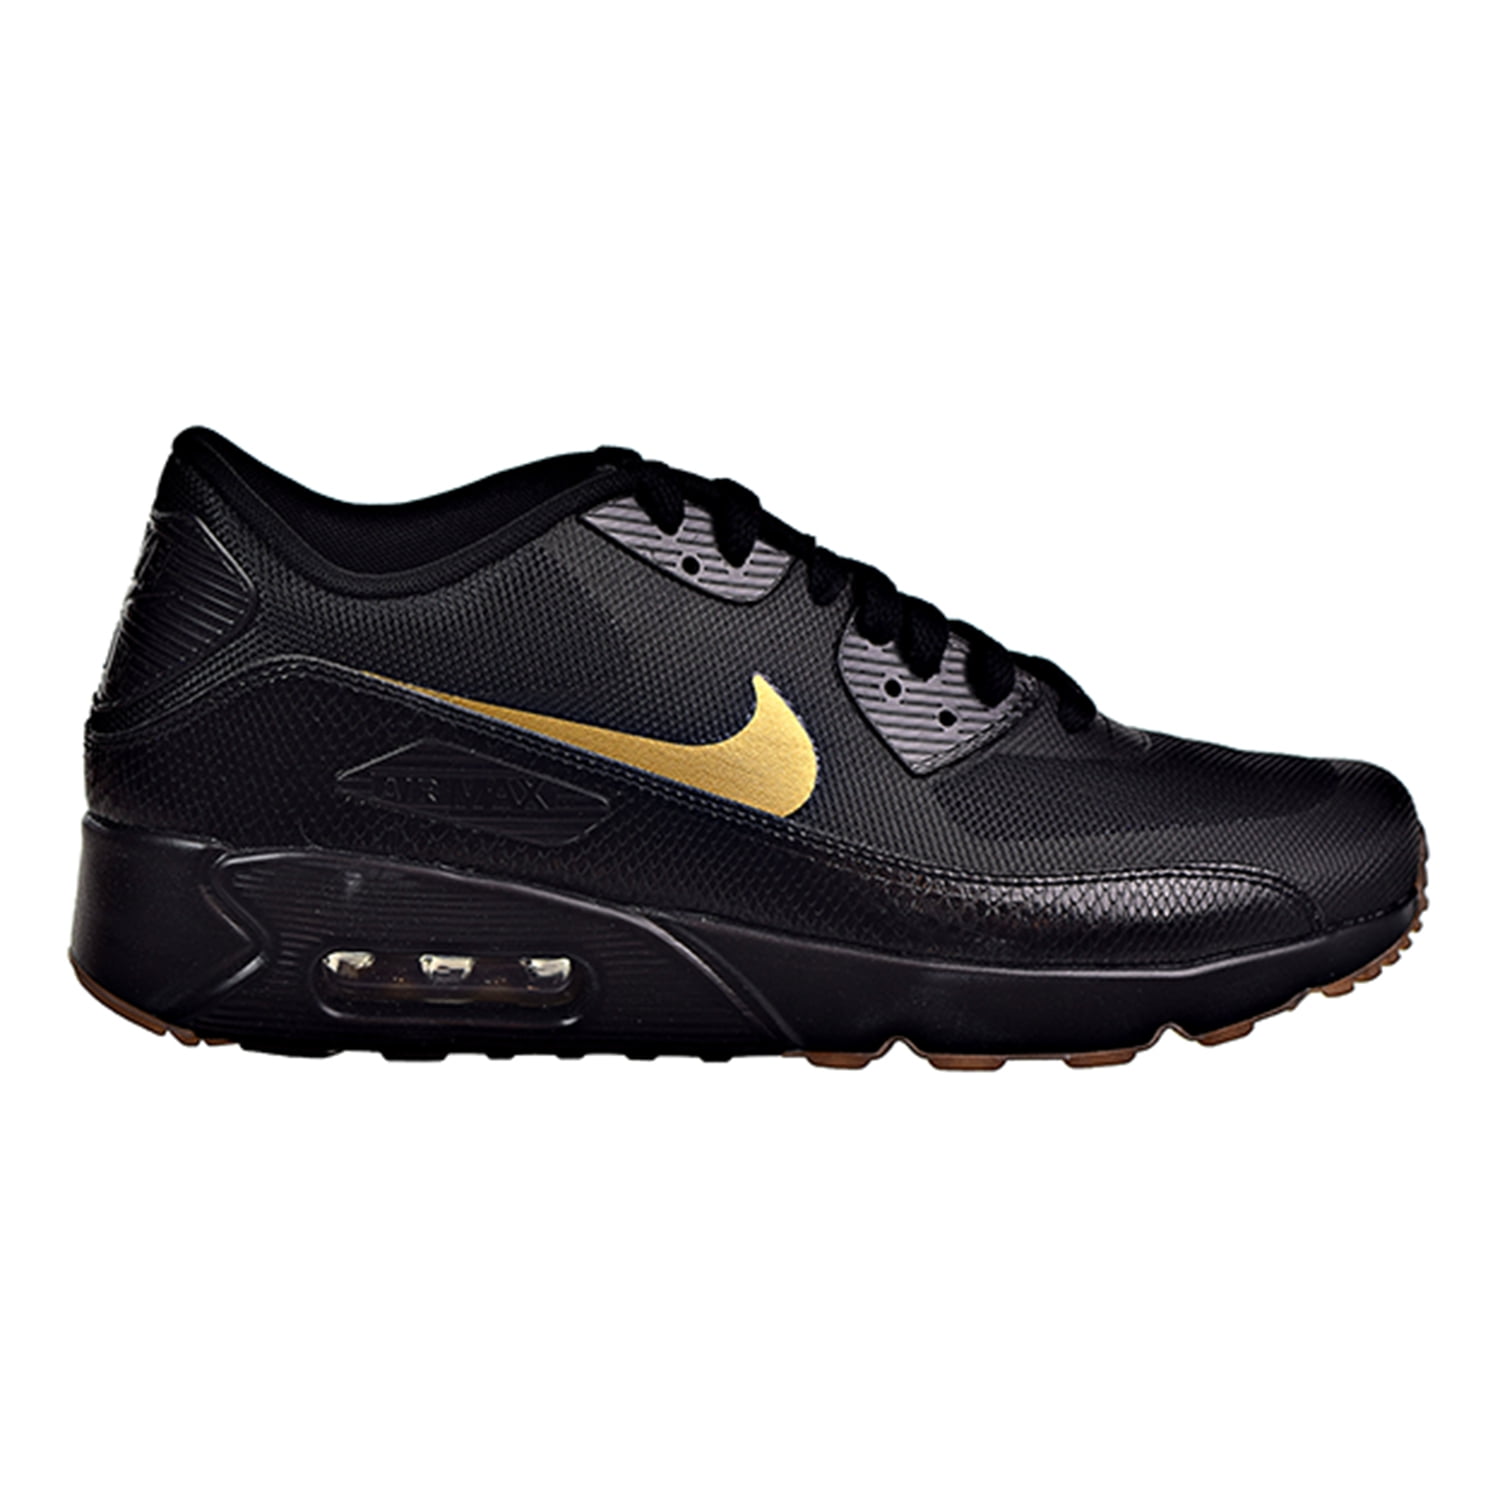 Nike Air Max 90 Ultra 2.0 Essential Mens Casual Sneakers Black/ Metallic Gold 875695-016 (11 US)